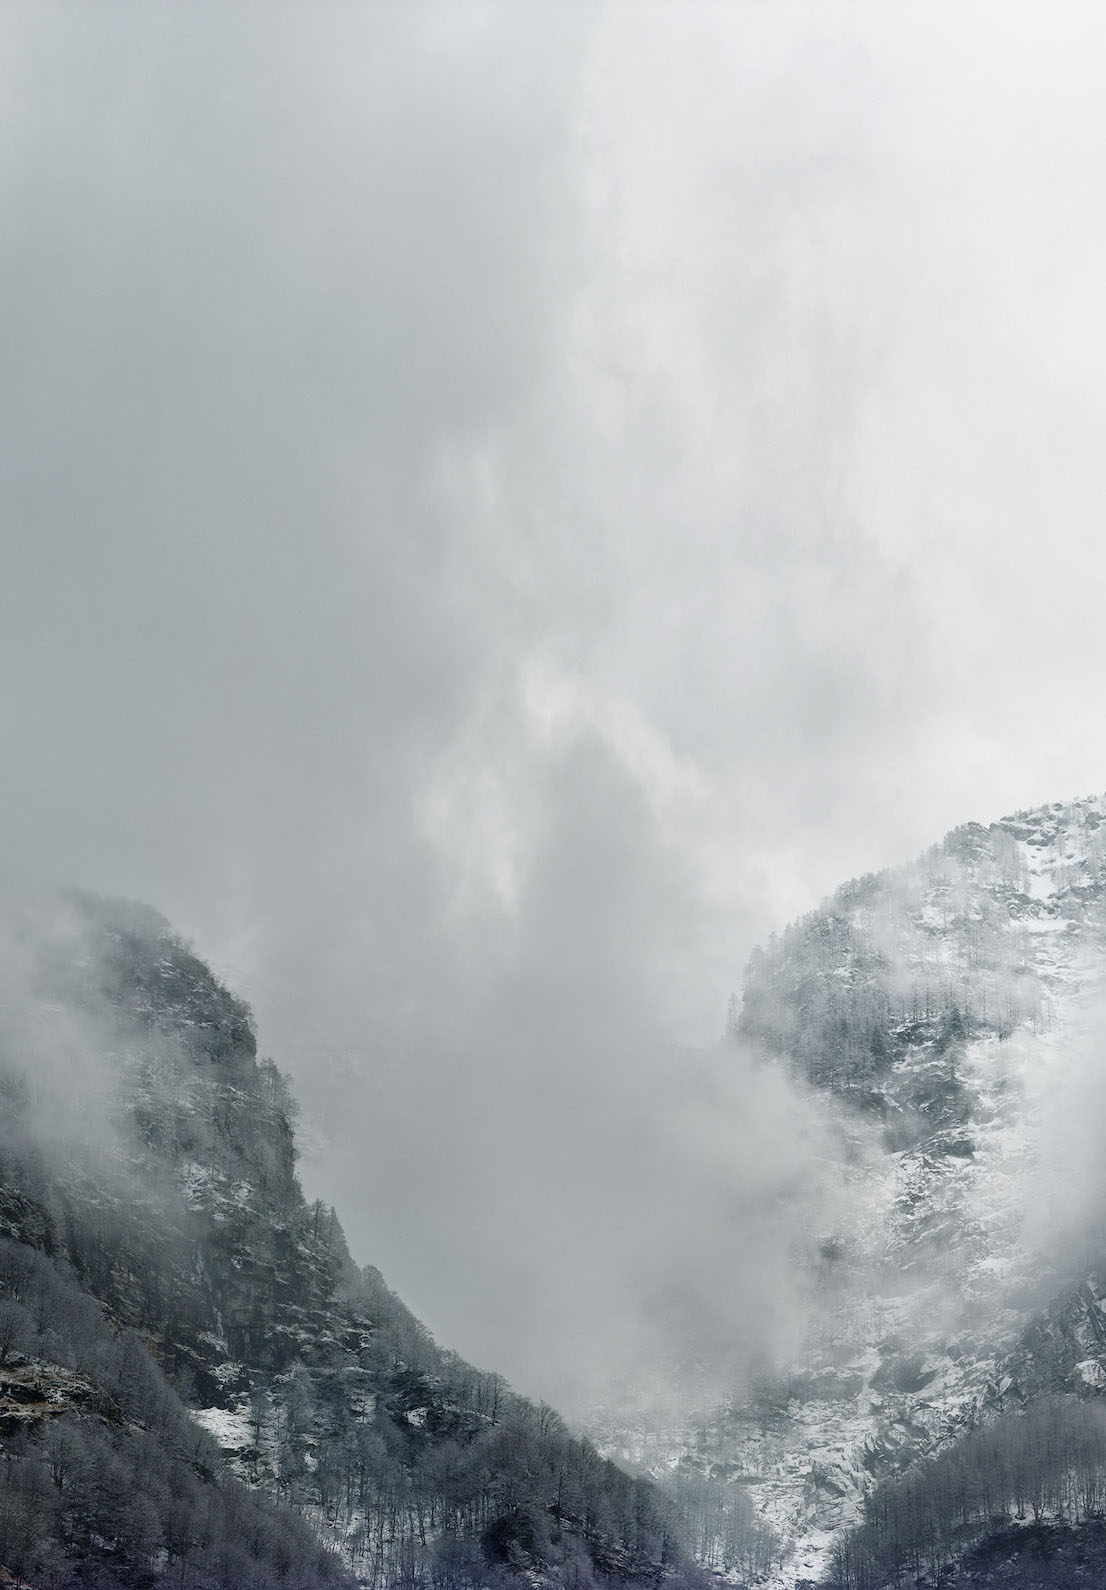 Axel Hütte Sonogno, Svizzera dalla serie New Mountains, 2013.